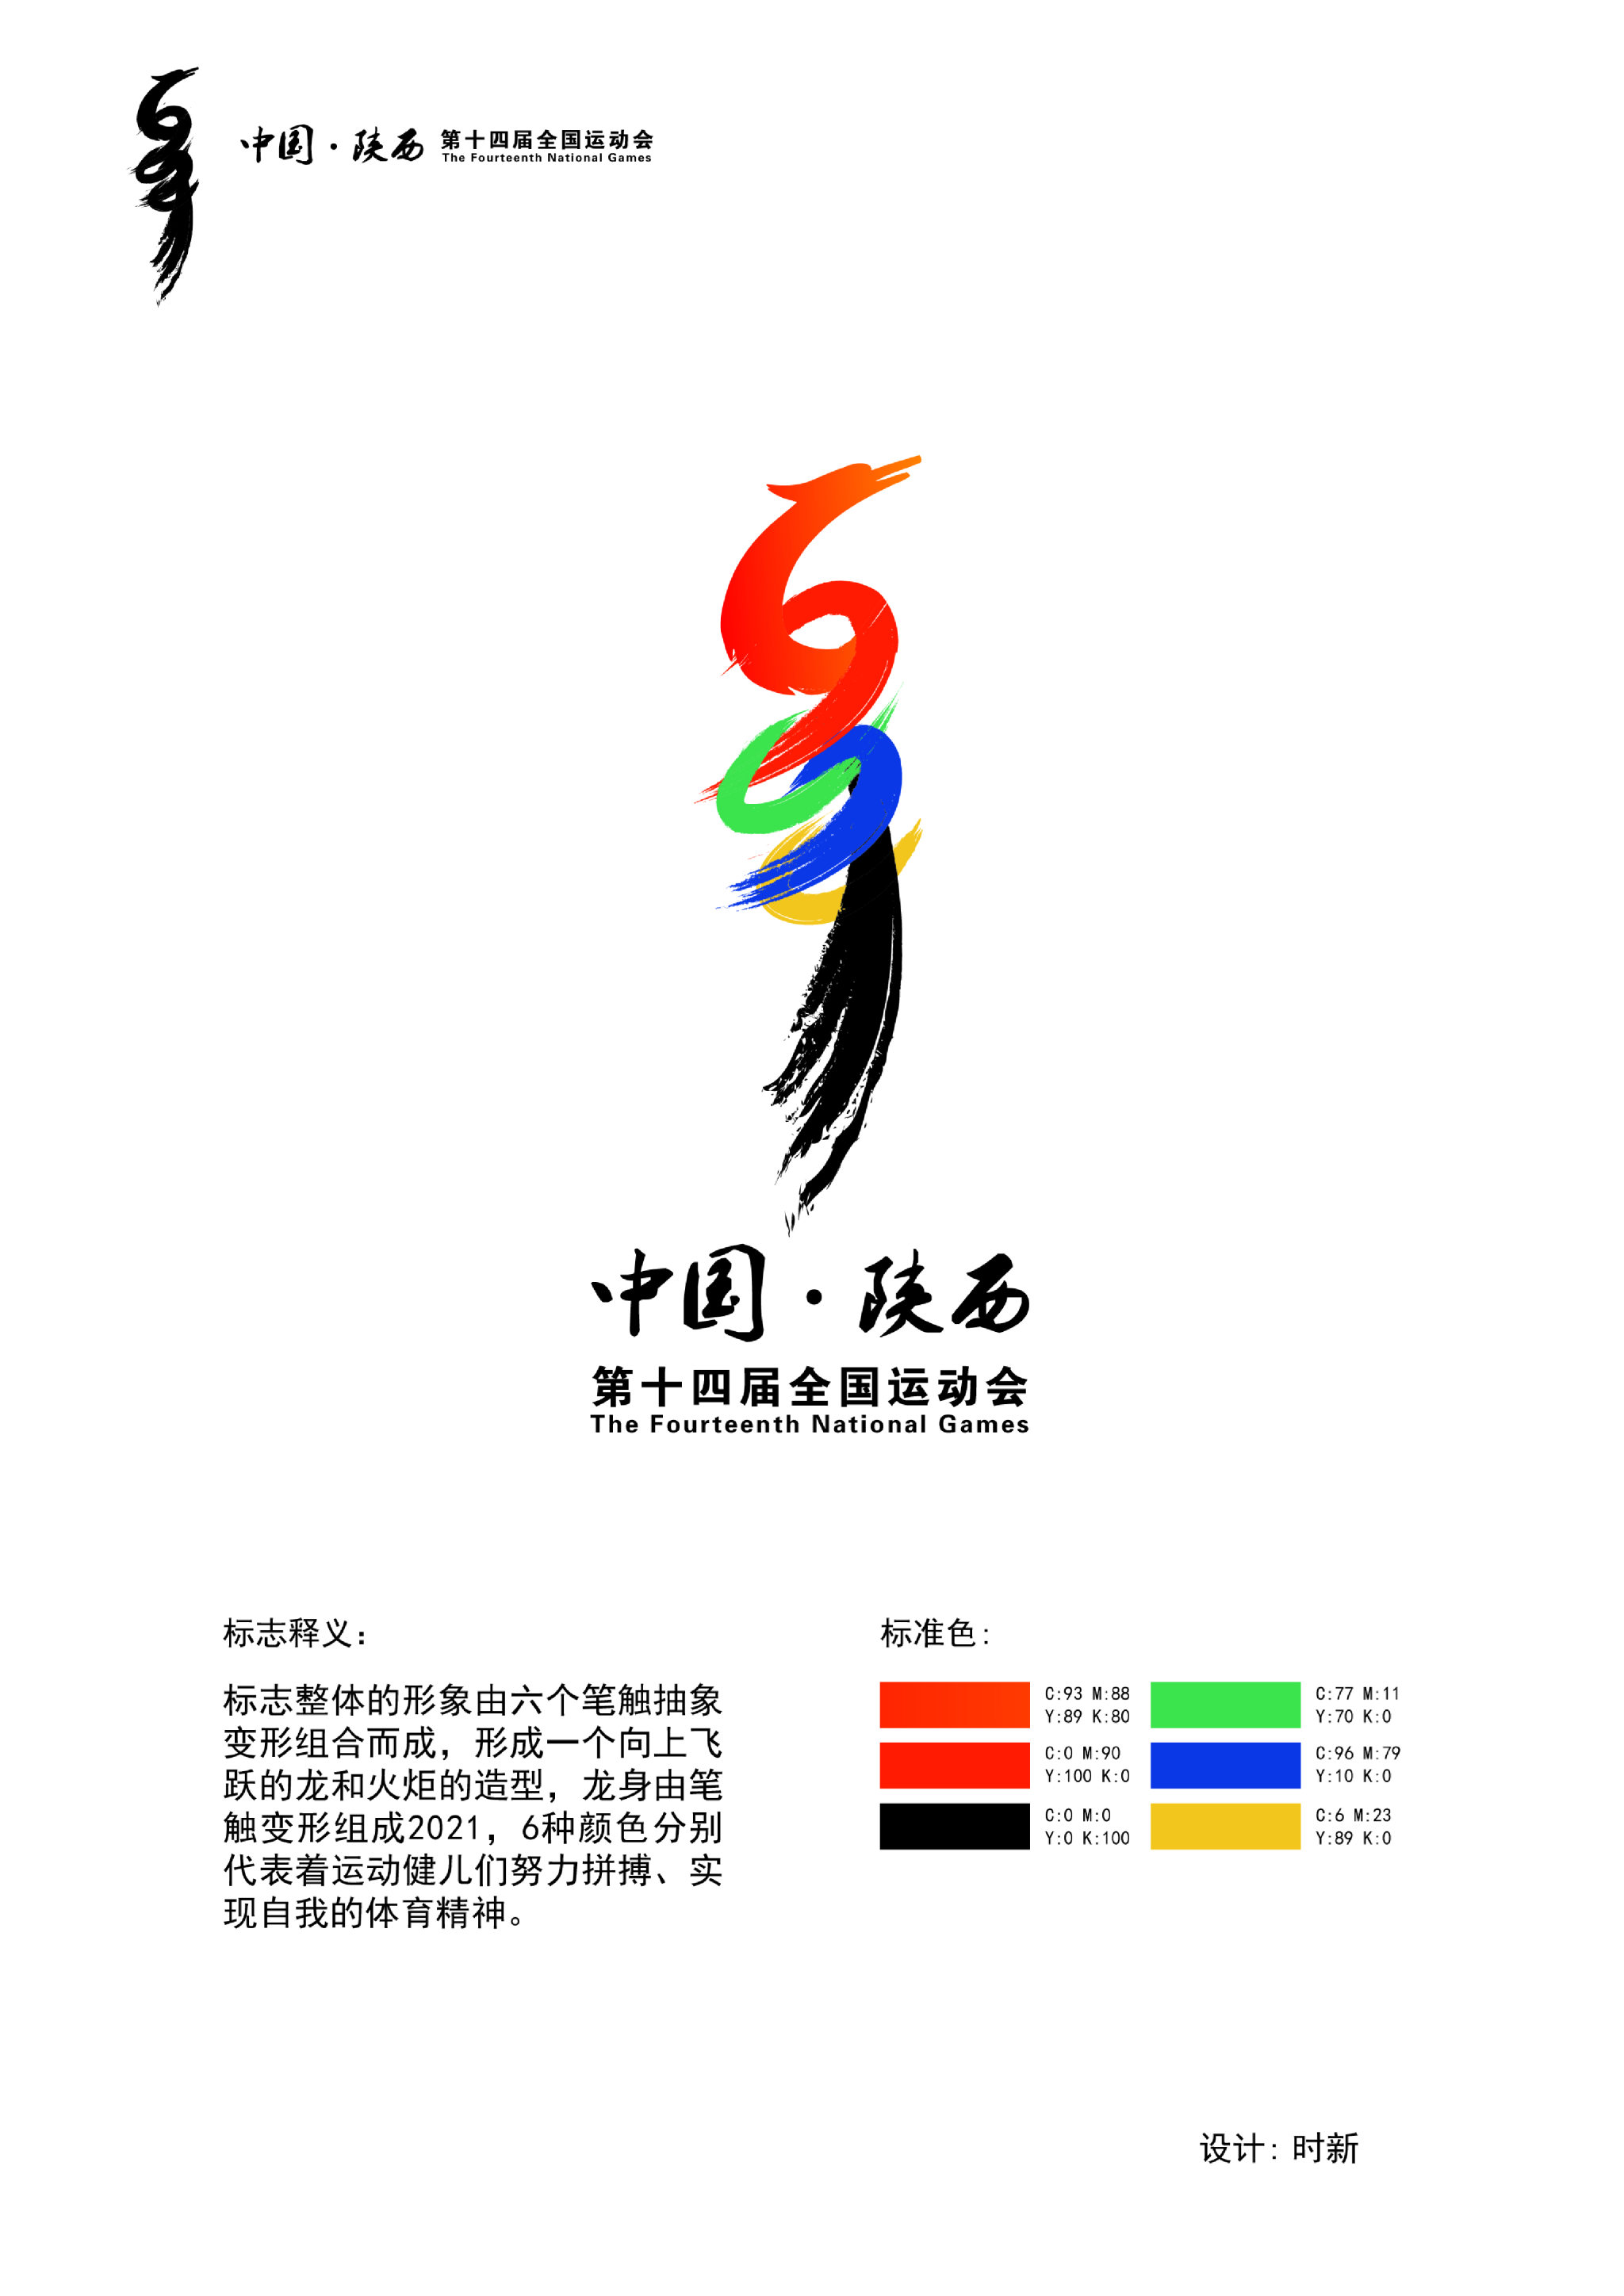 十四运会徽象征图片